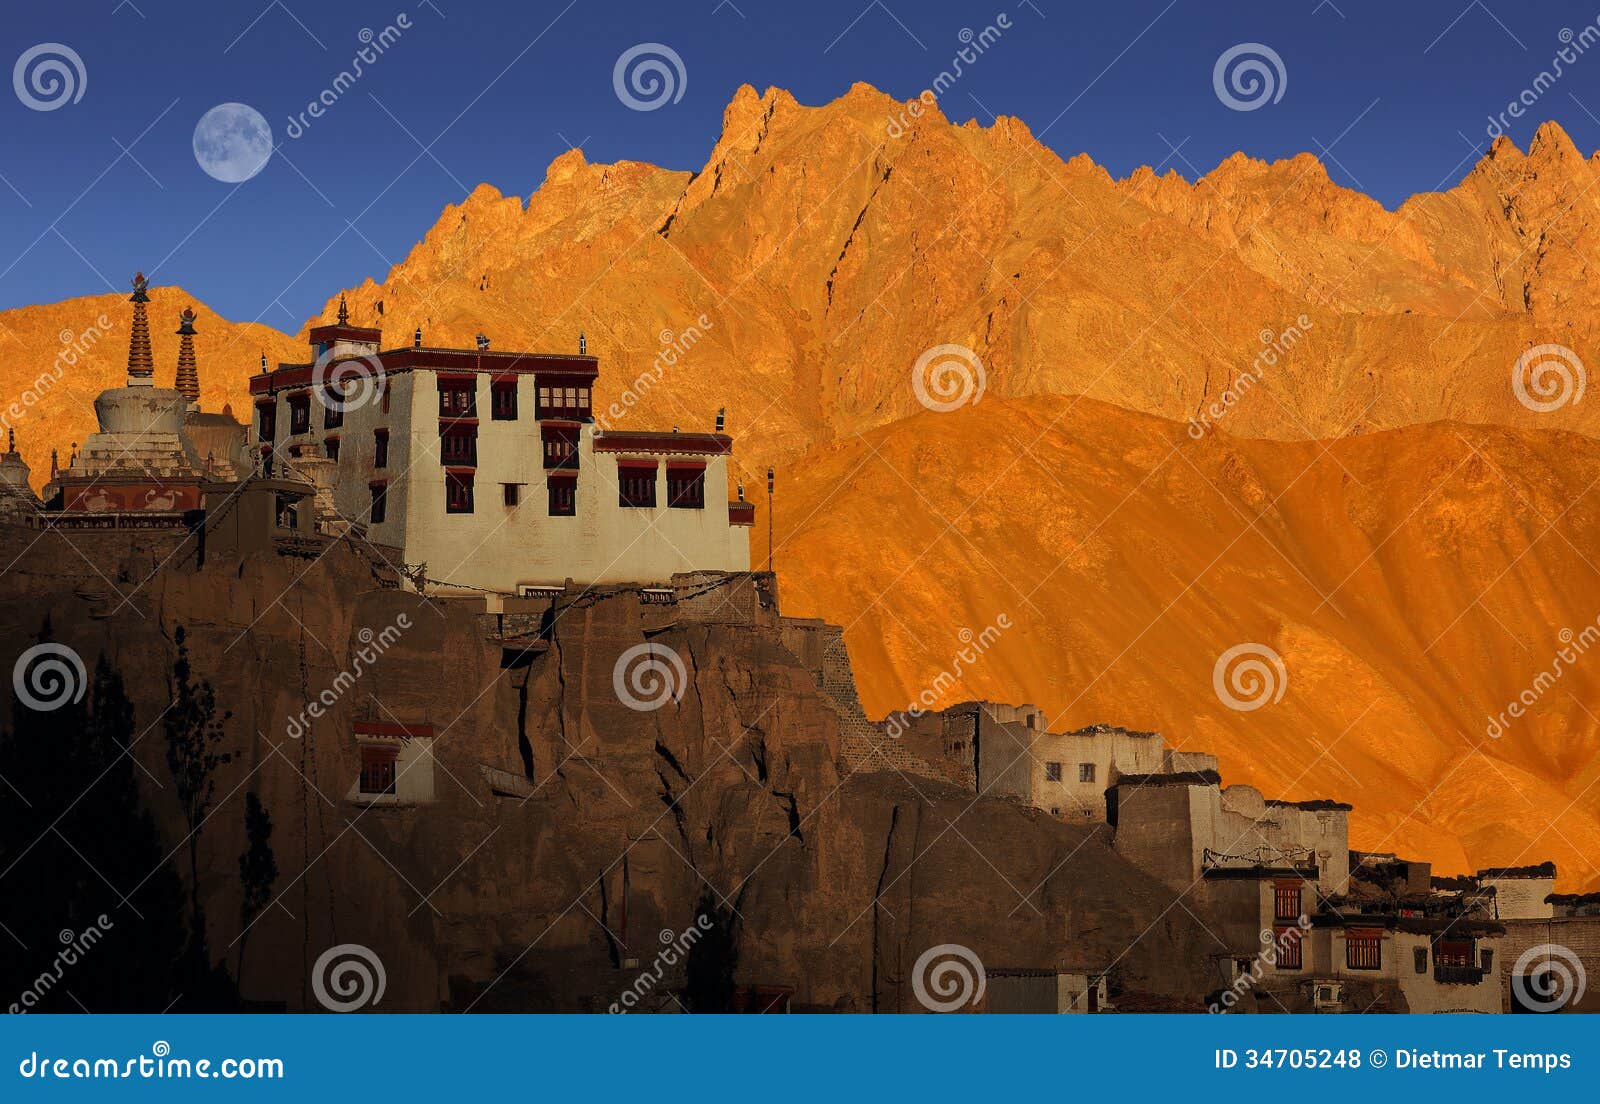 lamayuru monastery, ladakh